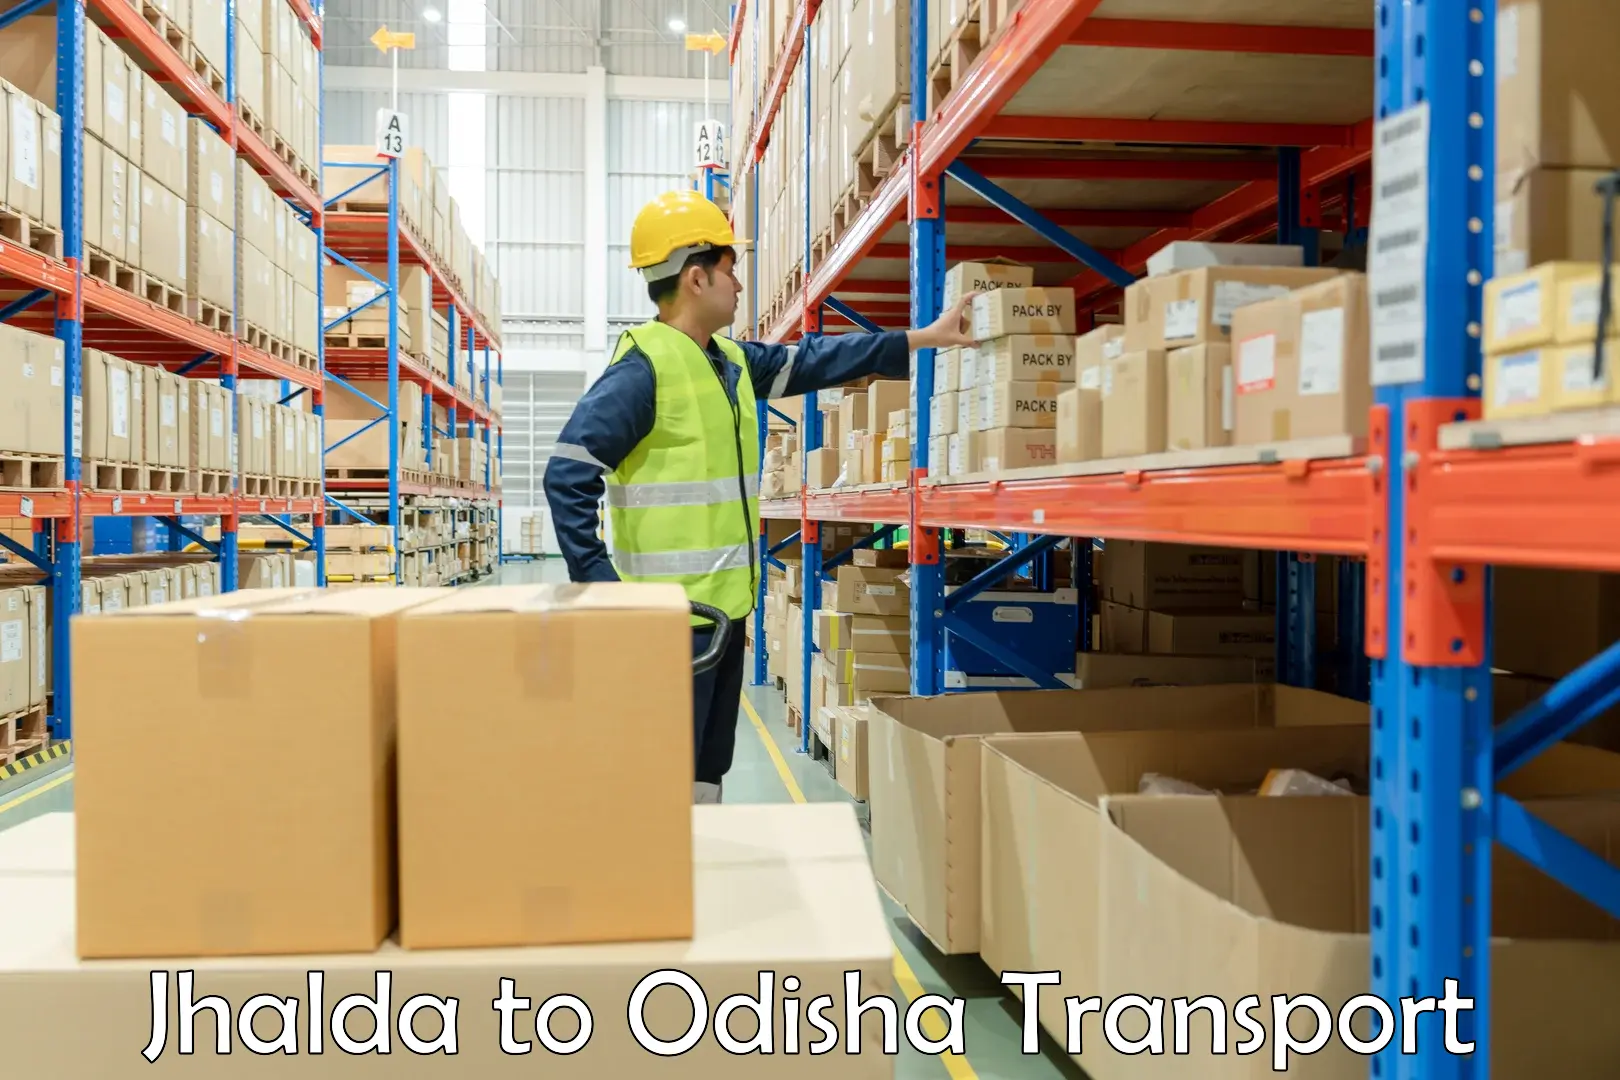 Transport shared services Jhalda to Odisha